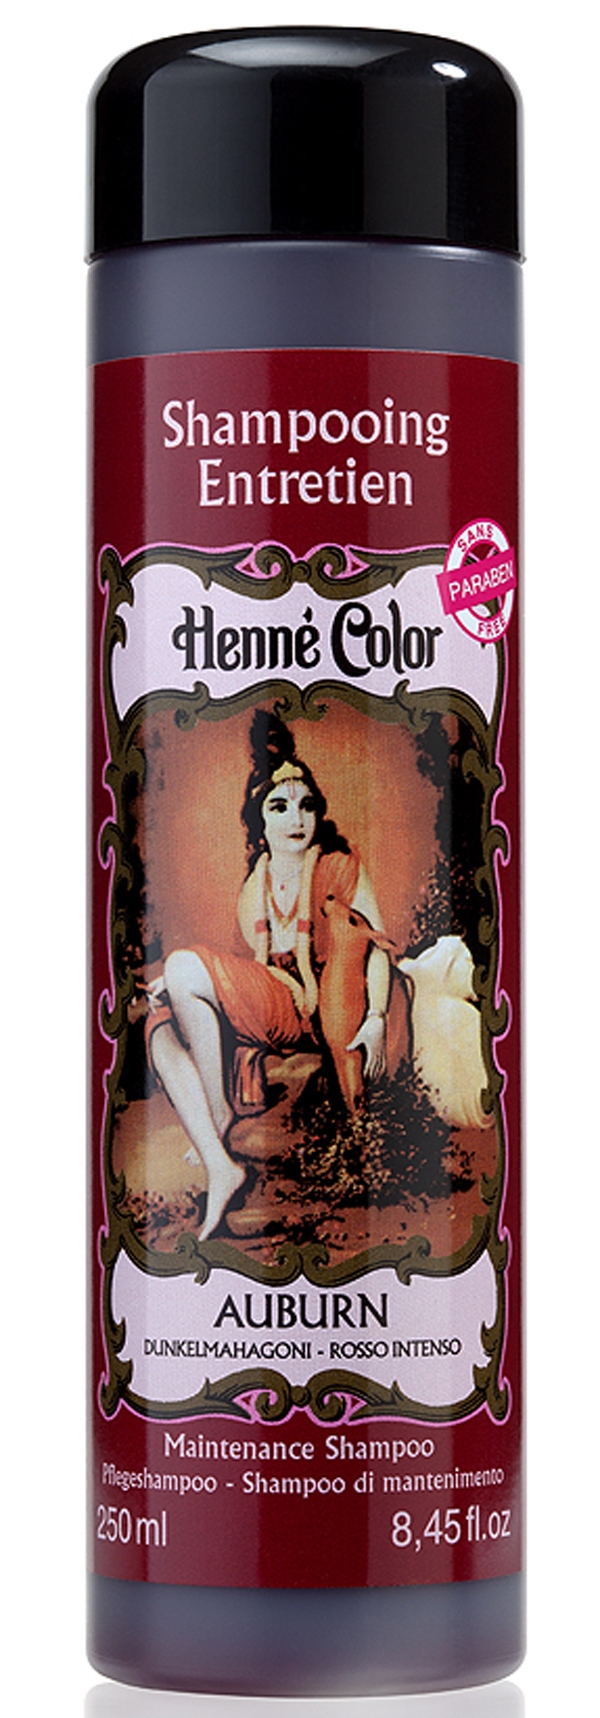 Confezione da 3 shampoo di manutenzione Henna Color ramato 250ml